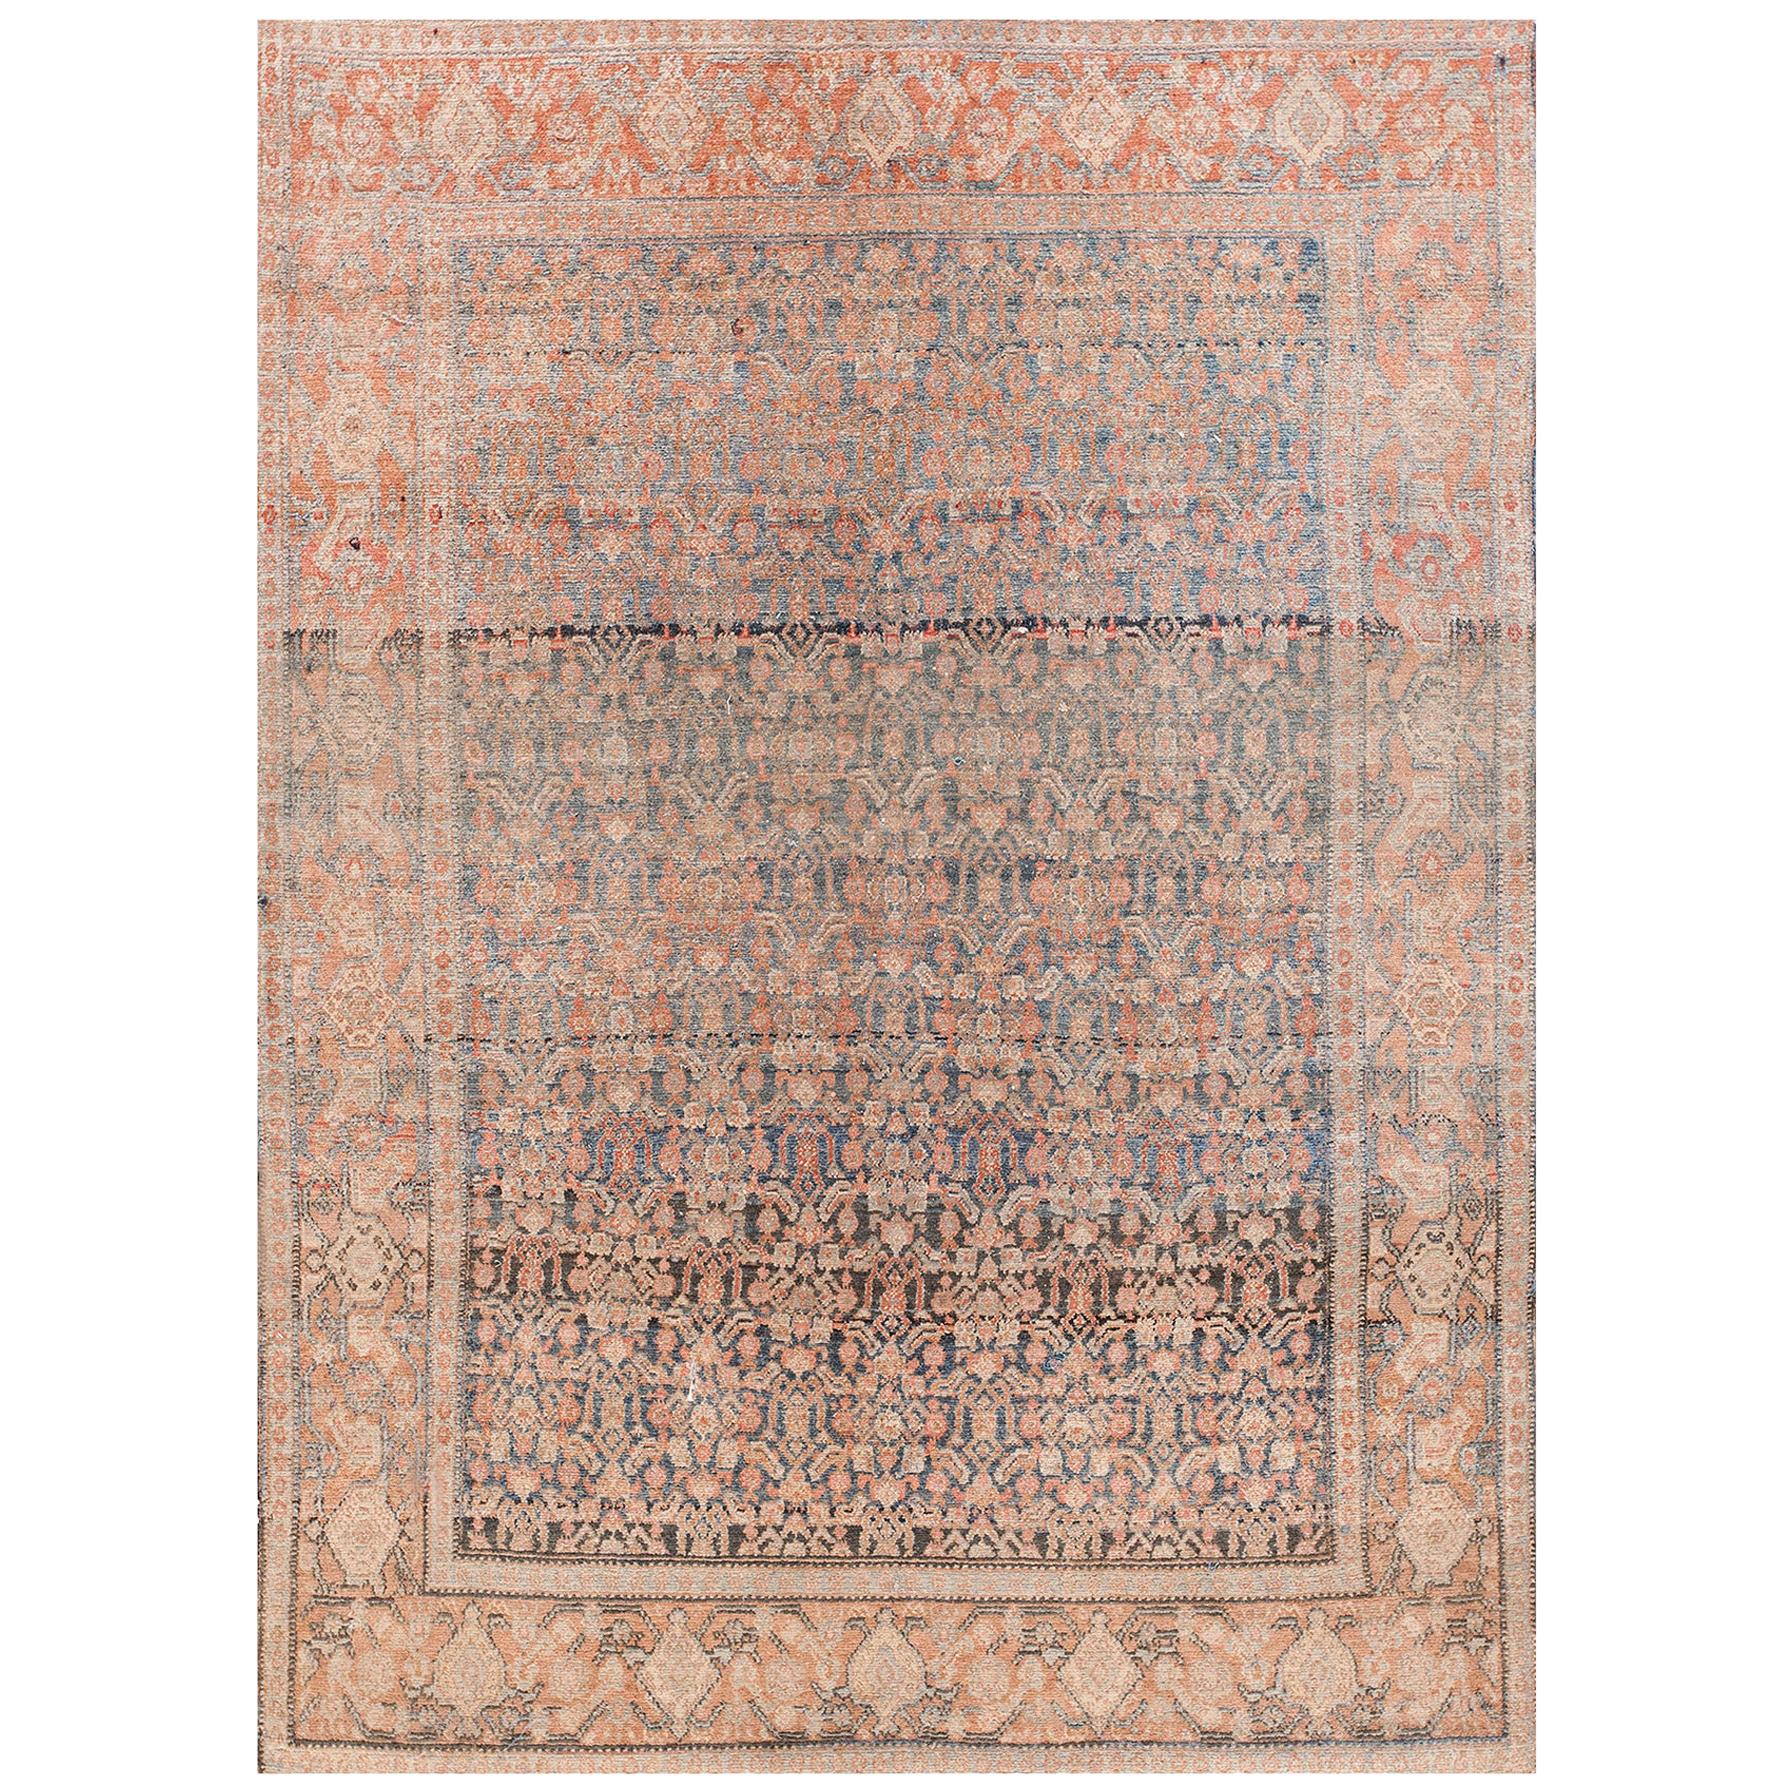 Tapis persan Senneh de la fin du 19ème siècle ( 4'7" x 6'6" - 139 x 198 )